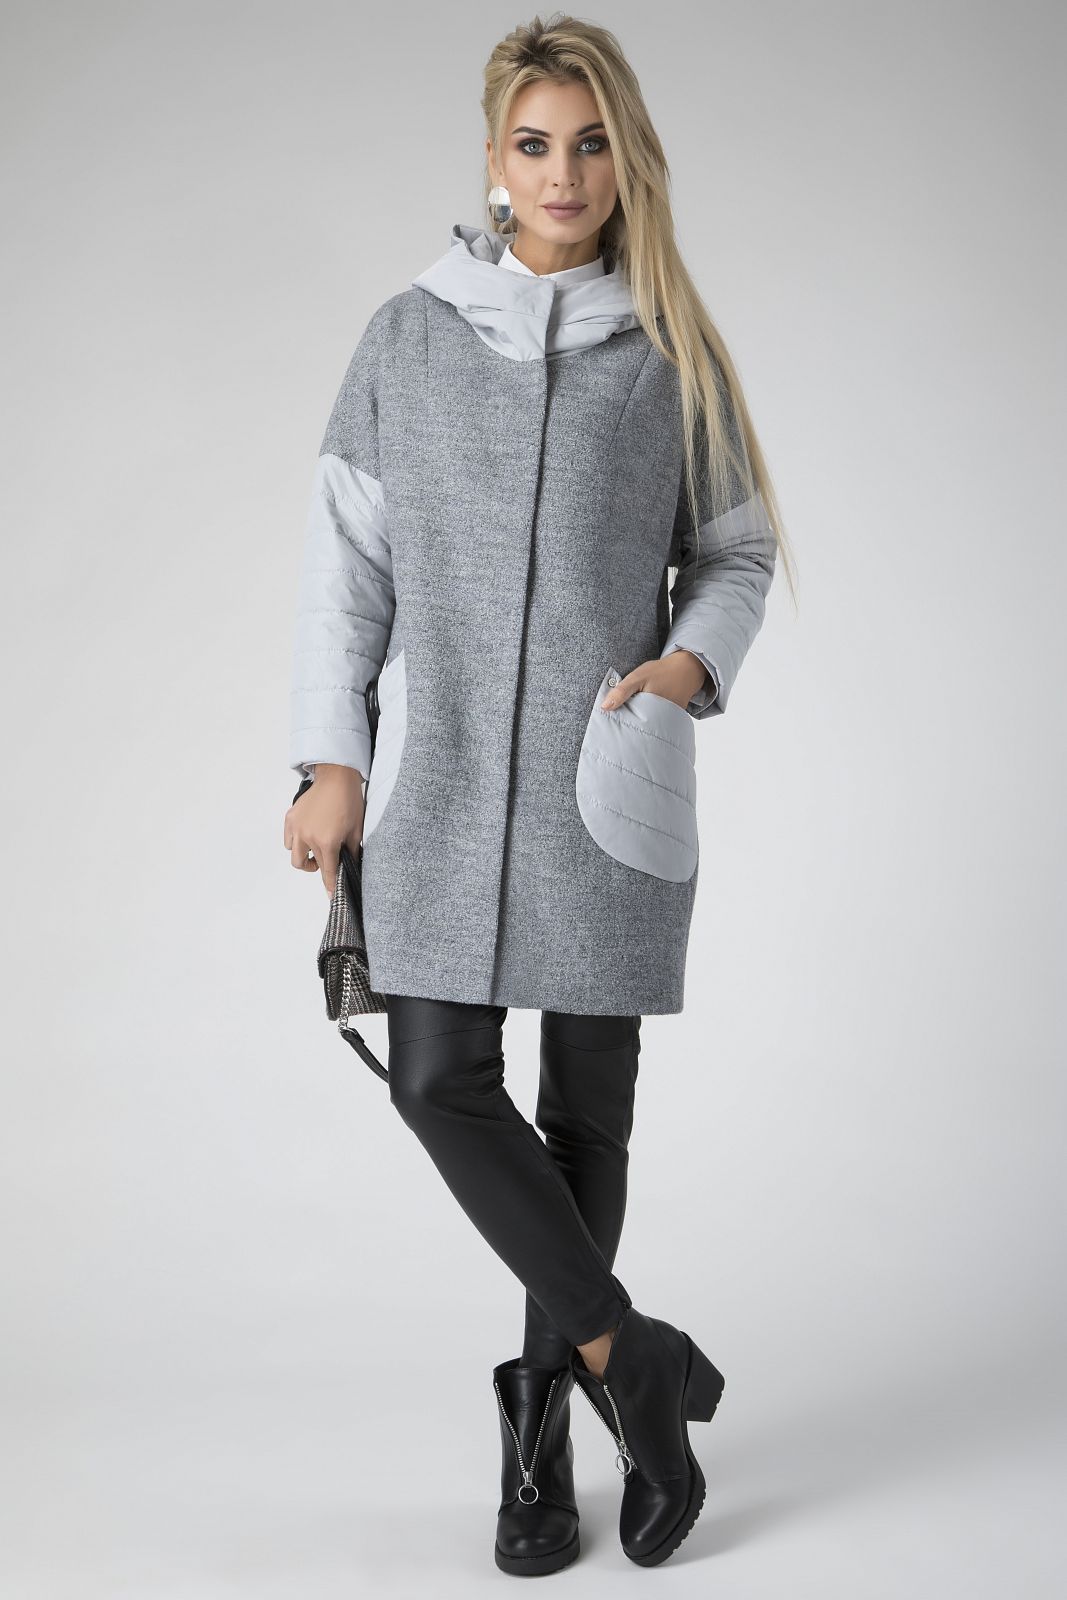 Комбинированный капюшон. Пальто зима Electrastyle. Electrastyle пальто зима 2021. Комбинированное пальто. Женское пальто комбинированное с трикотажем.